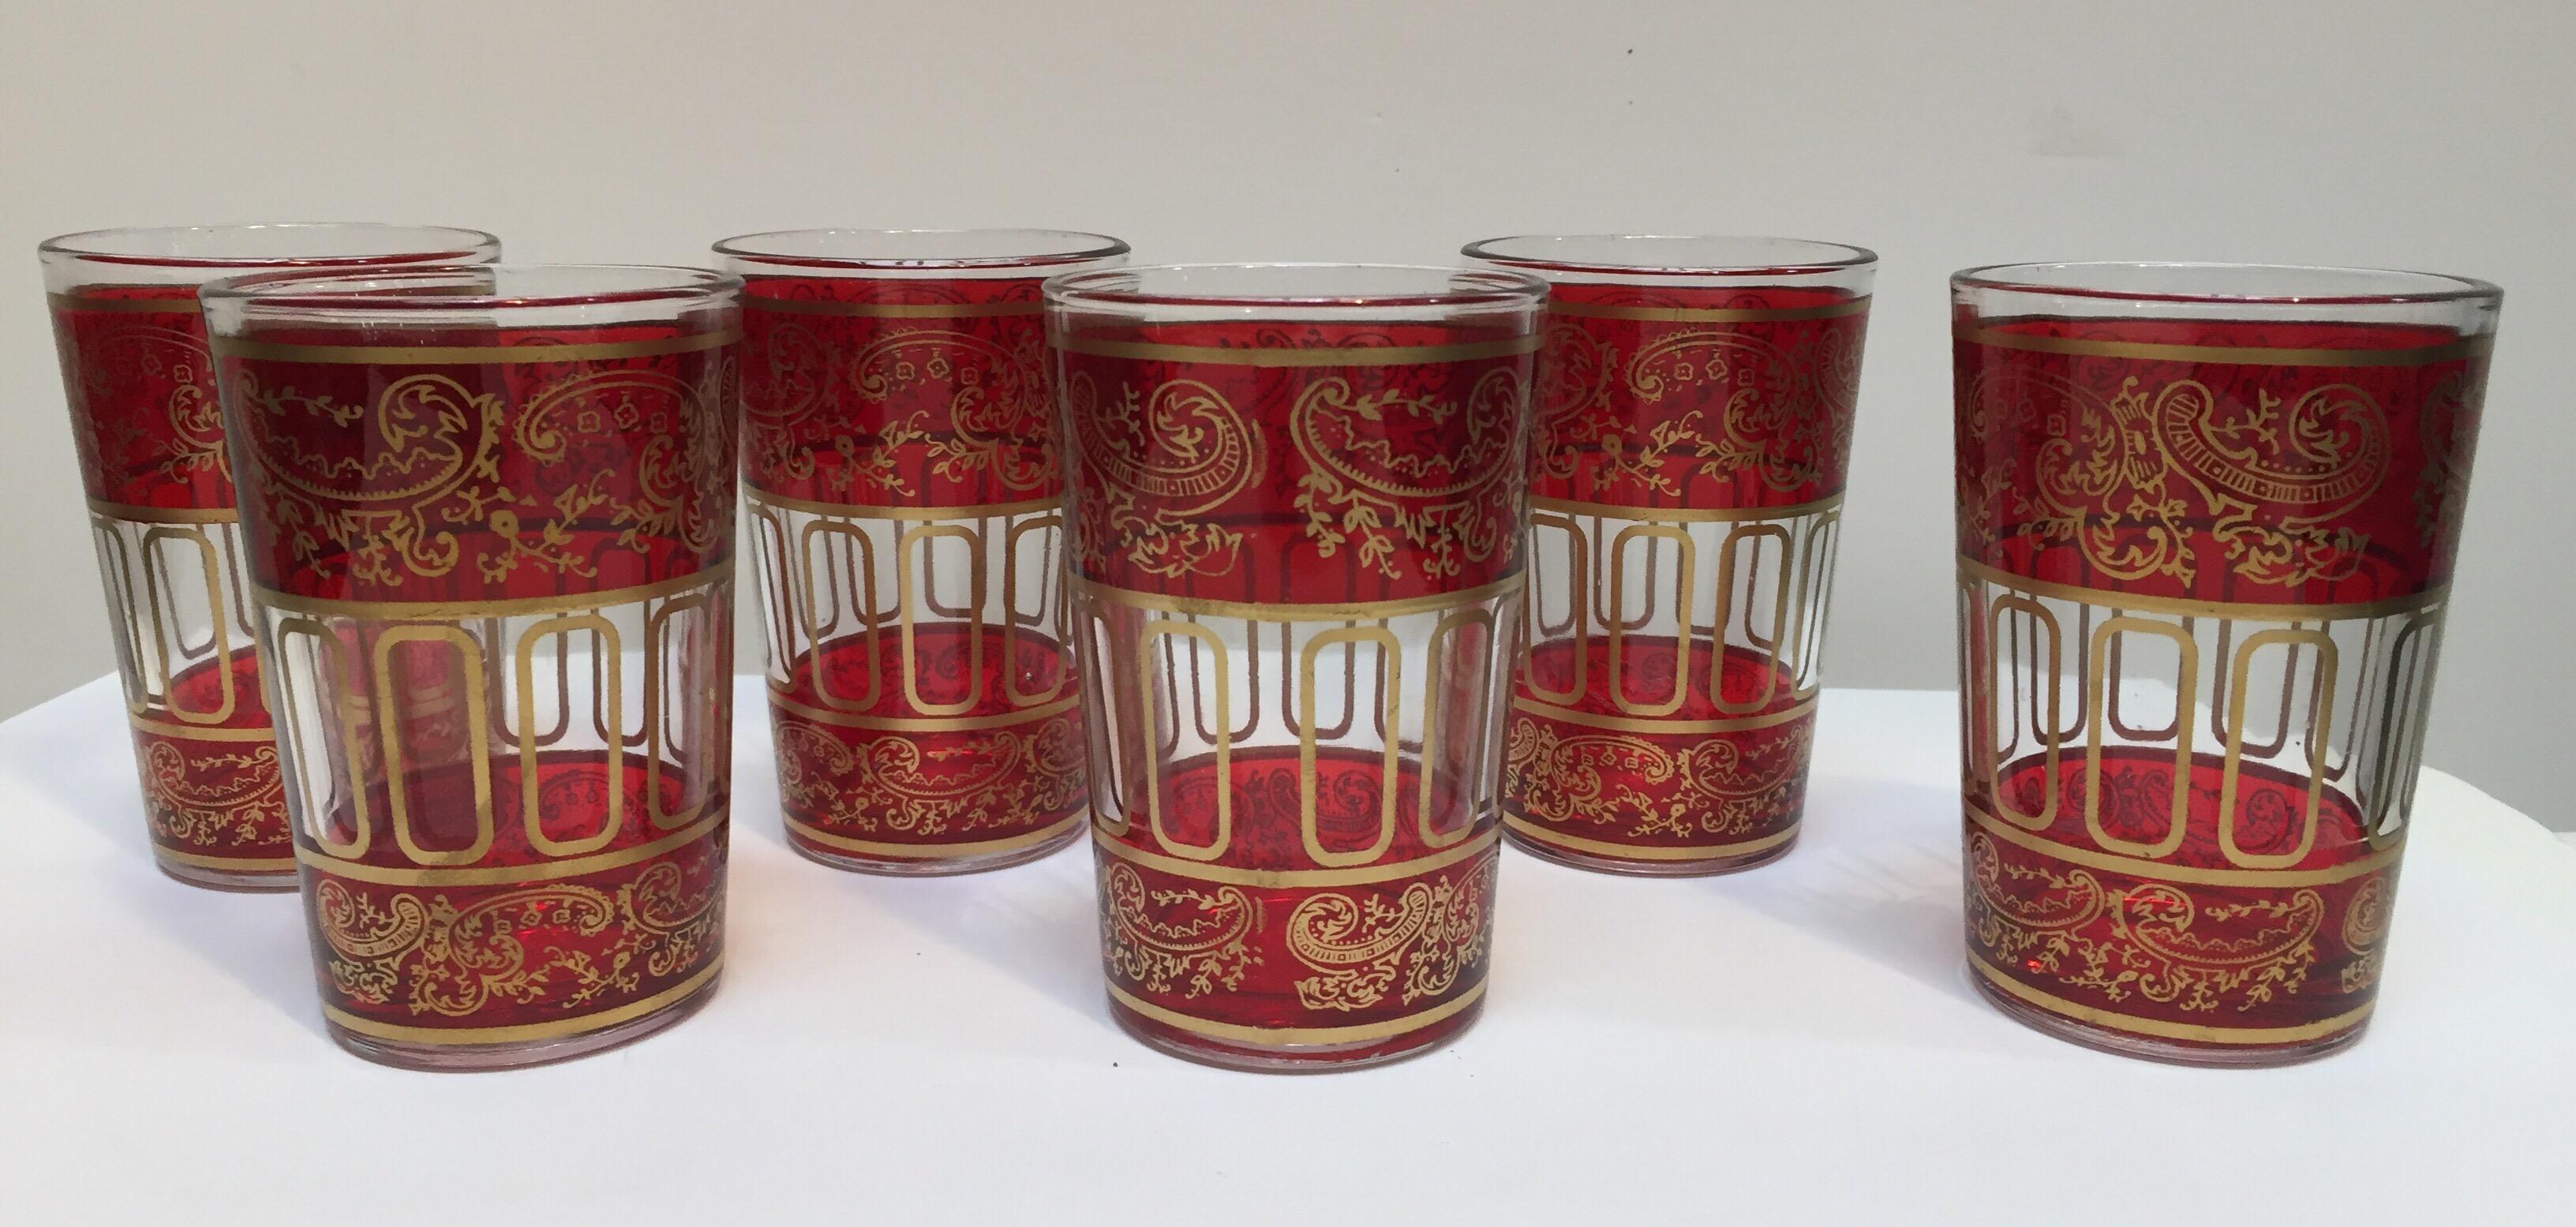 Set aus sechs roten marokkanischen Gläsern mit goldfarbenem maurischem Muster.
Bohemian Stil trinken kleinen Schuss rubinrote Gläser mit einem klassischen Gold und Muster maurischen Fries verziert.
Verwenden Sie diese eleganten Gläser für